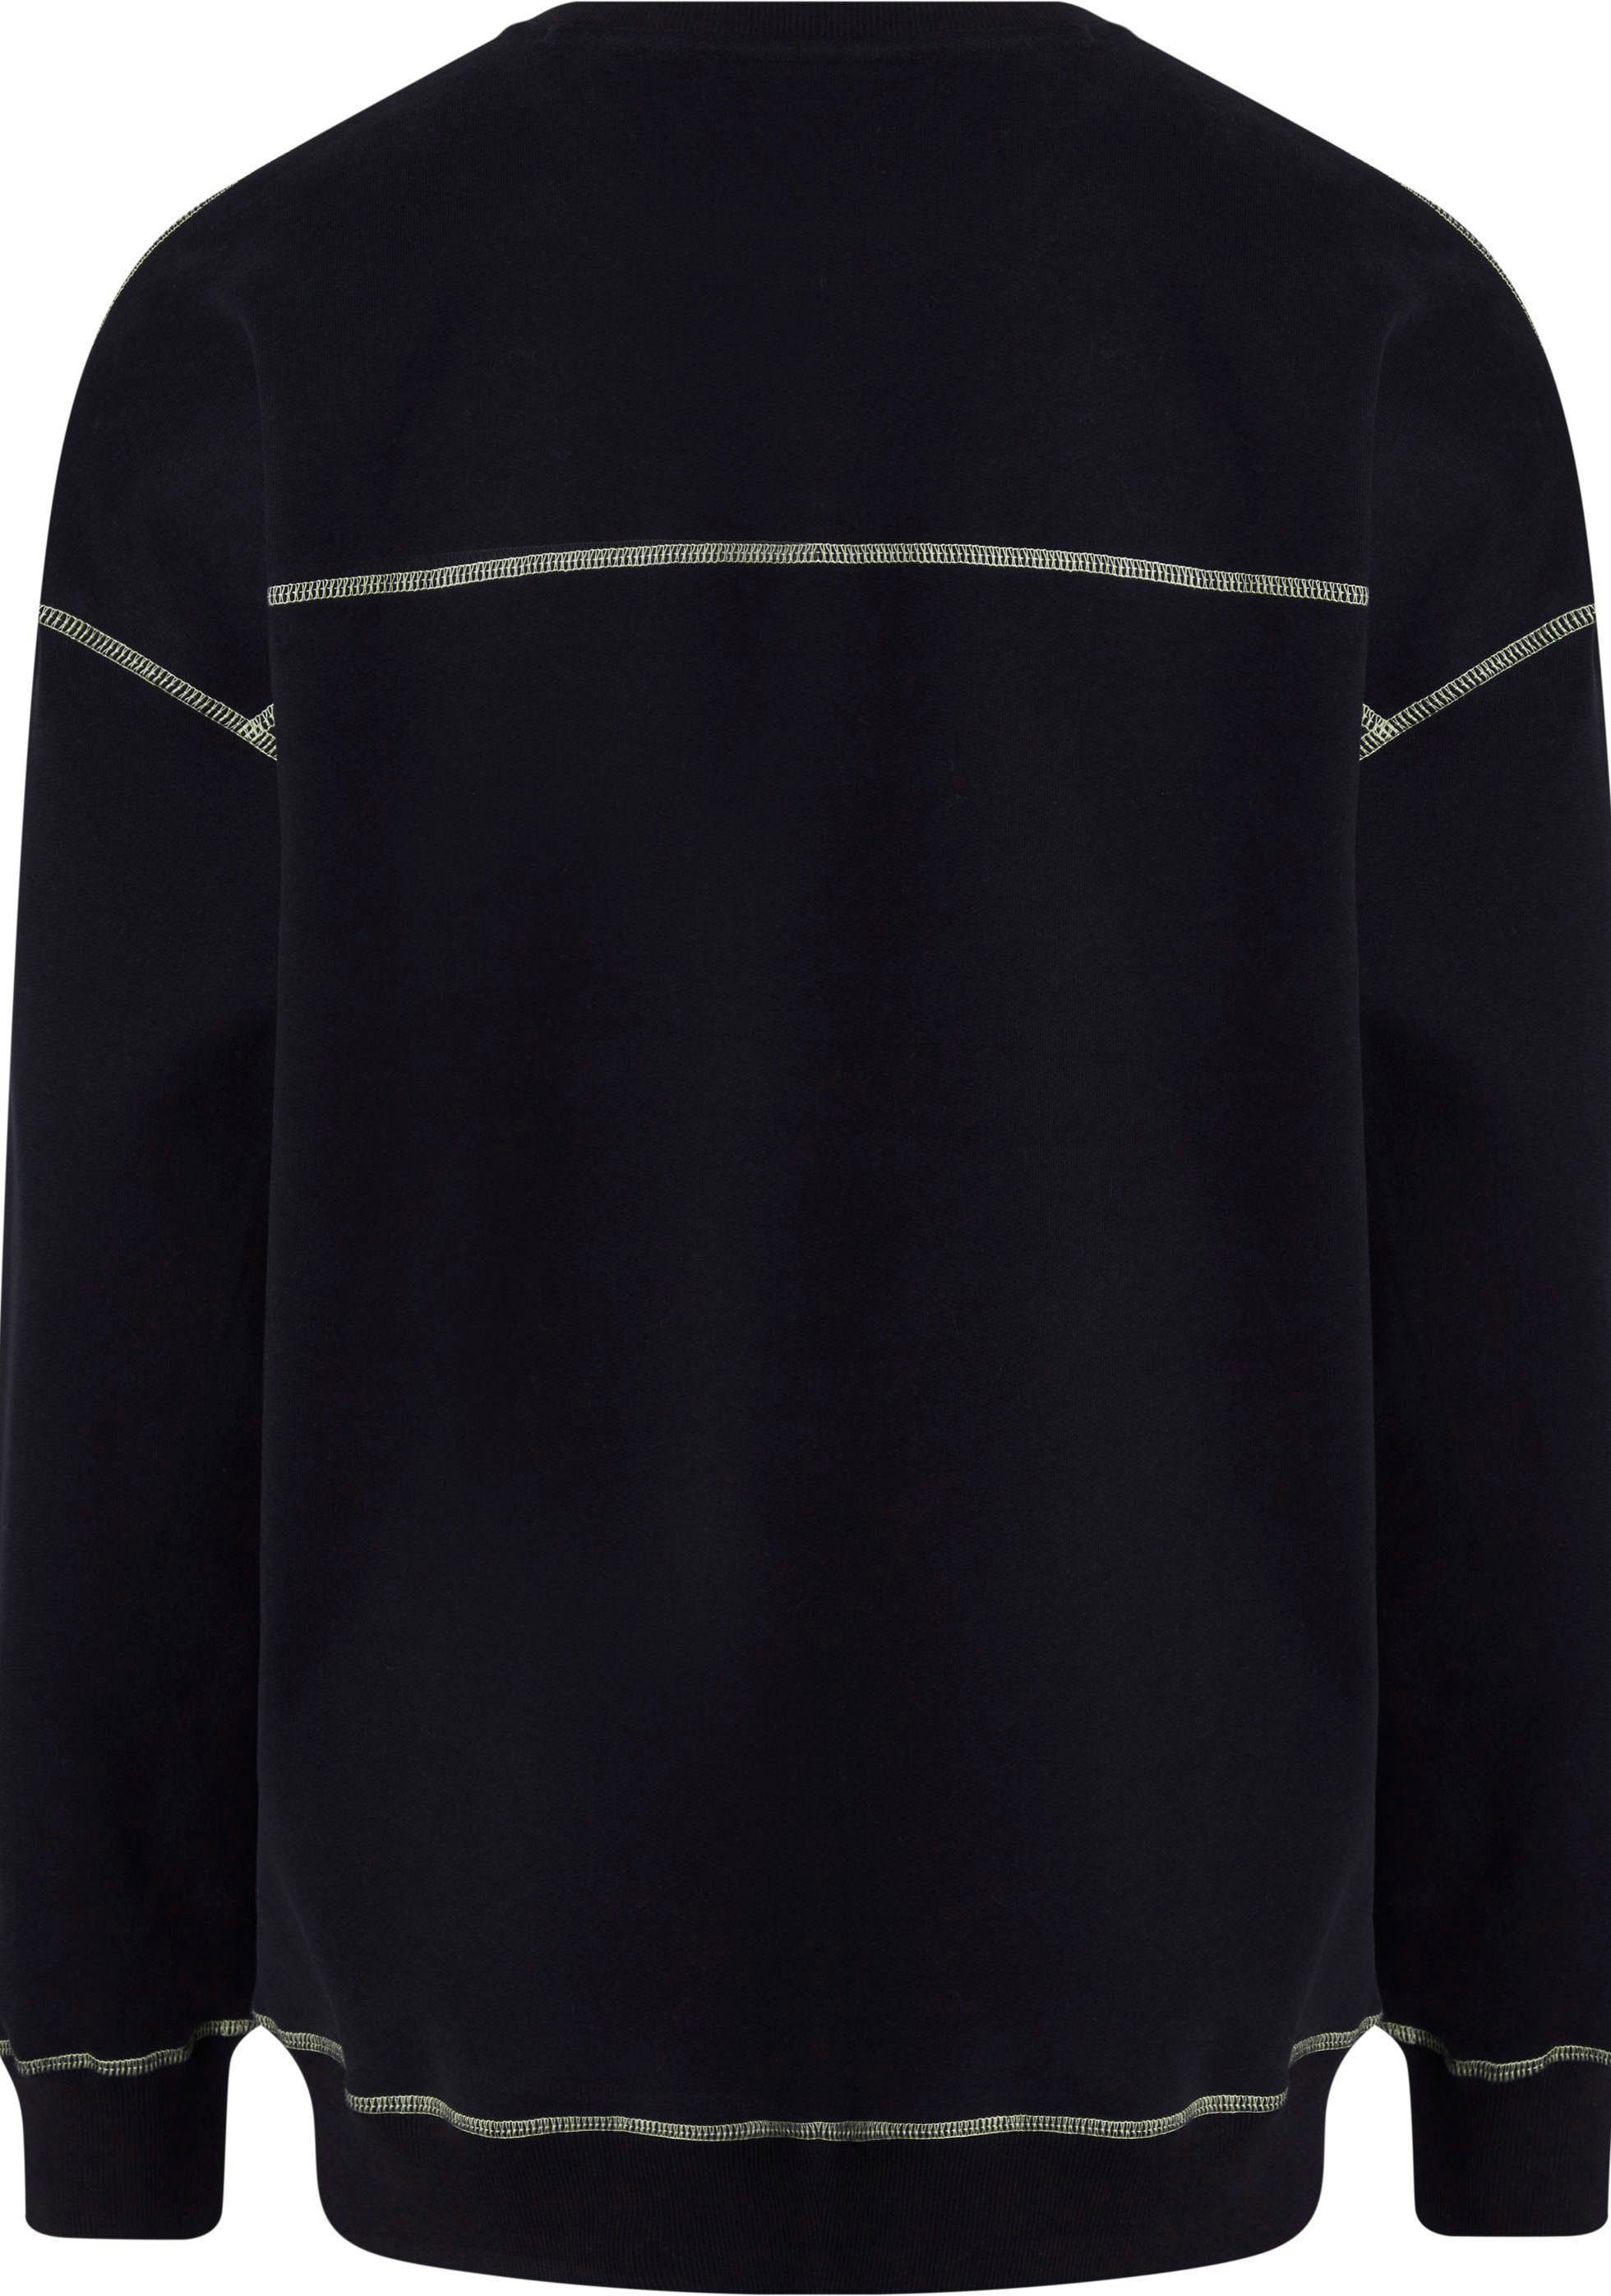 L/S Calvin Kontrastnähten mit Klein Underwear Sweatshirt BLACK SWEATSHIRT